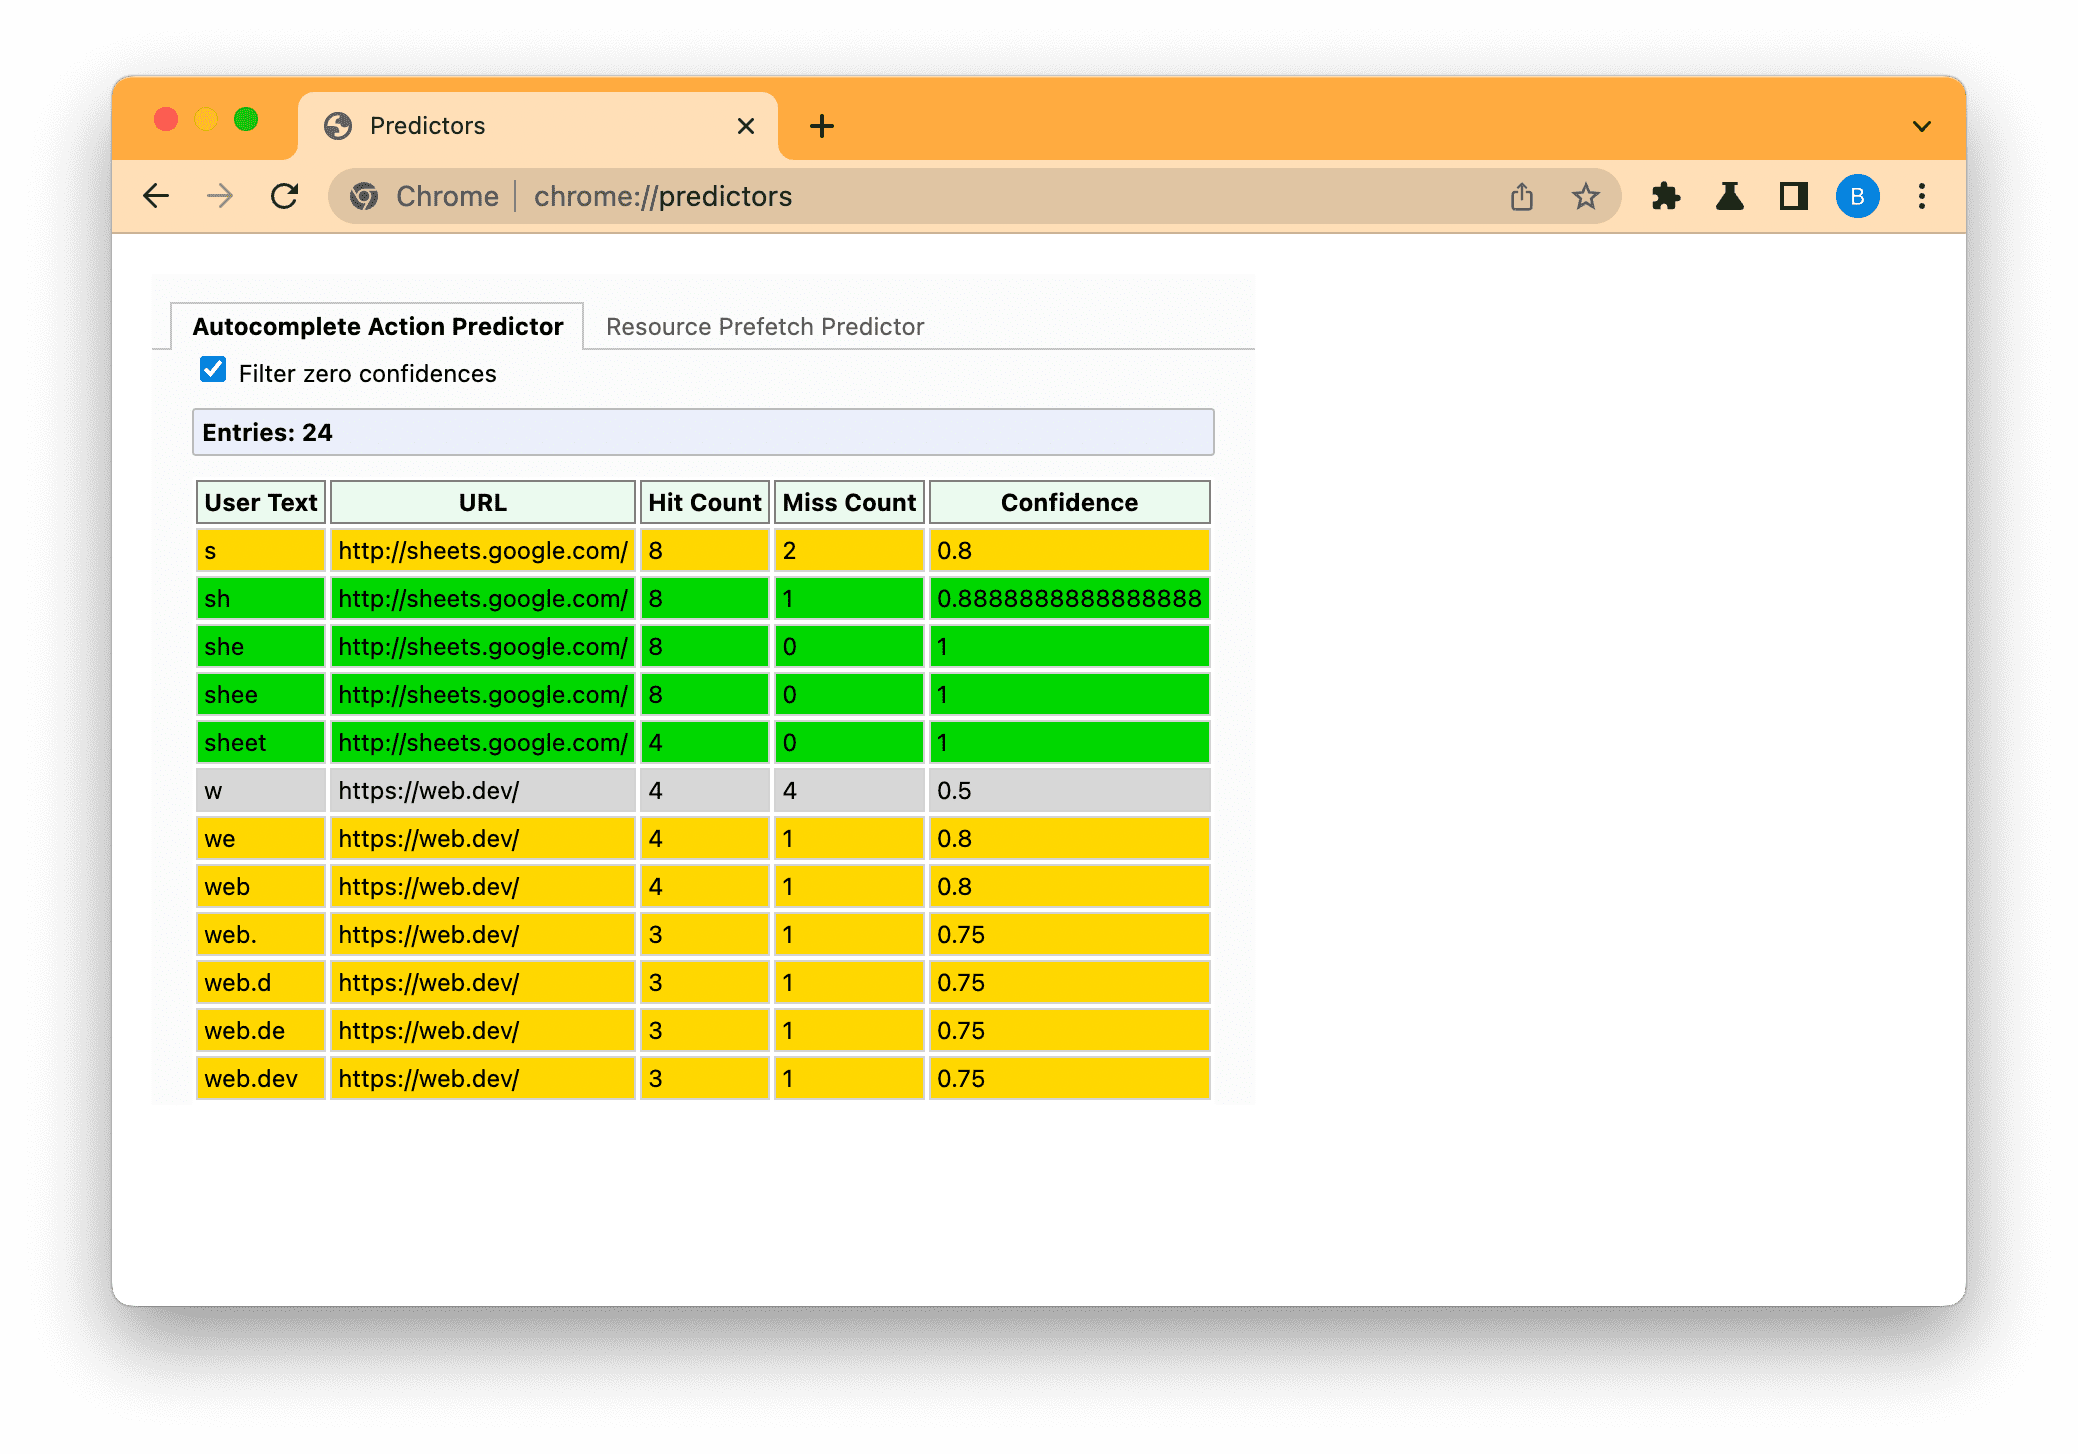 Zrzut ekranu strony Prognozy Chrome z filtrowaniem na podstawie wpisanego tekstu niski (szary), średni (bursztynowy) i wysoki (zielony) na podstawie wpisanego tekstu.